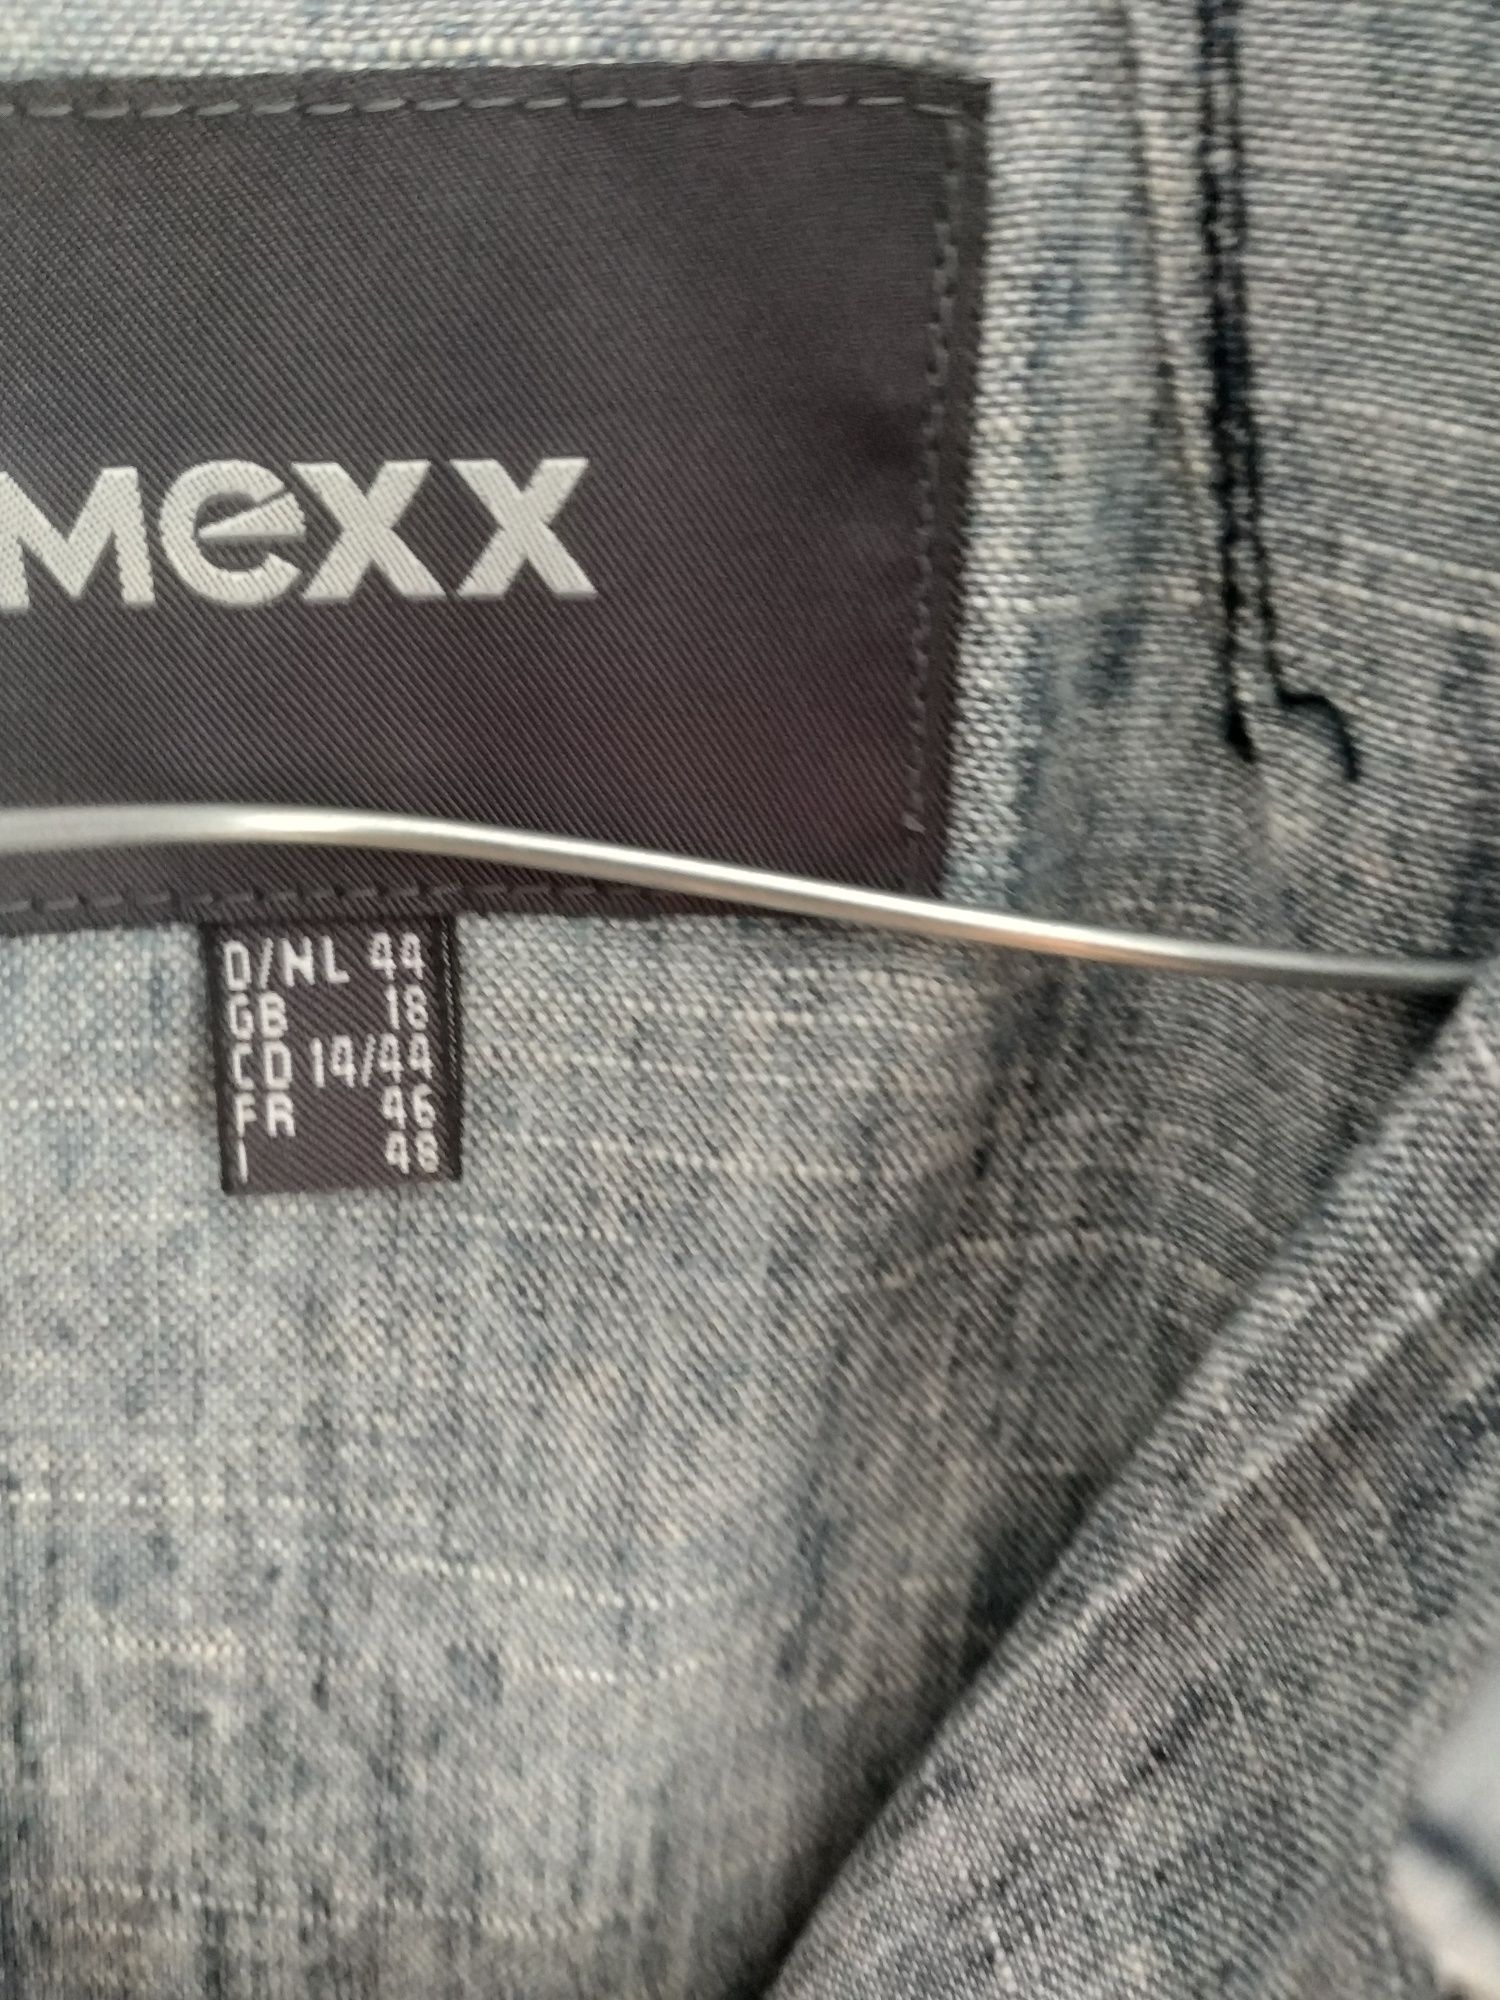 Mexx bluza z jeansu 44+druga gratis